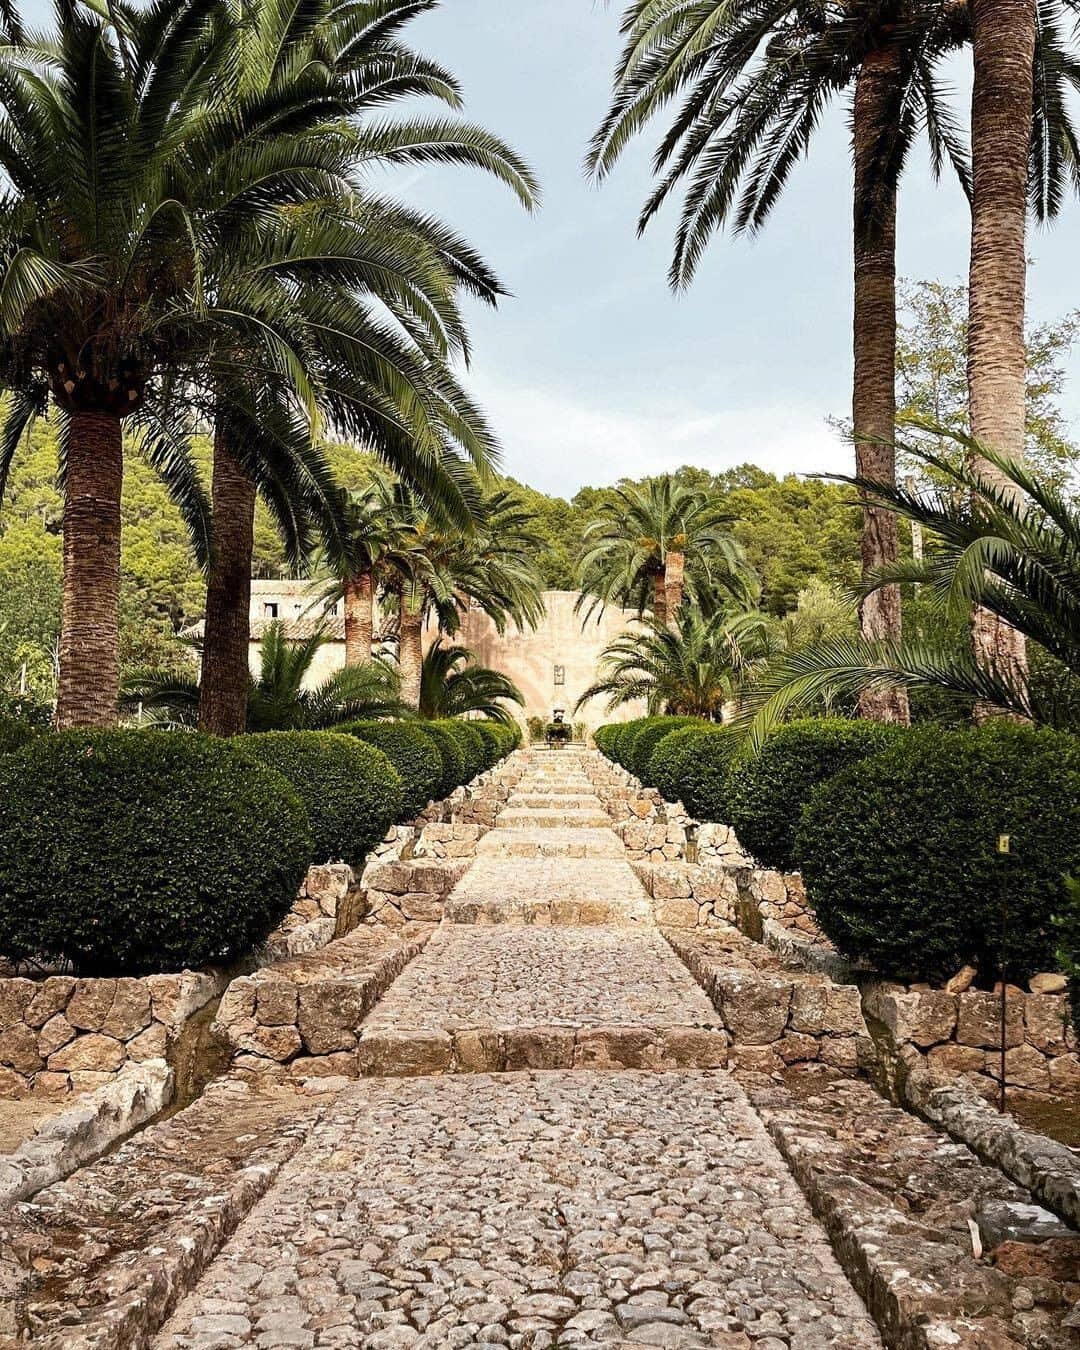 Pintoresco pasillo de piedra en los jardines de Alfabia en Mallorca, rodeado de exuberante vegetación y palmeras.